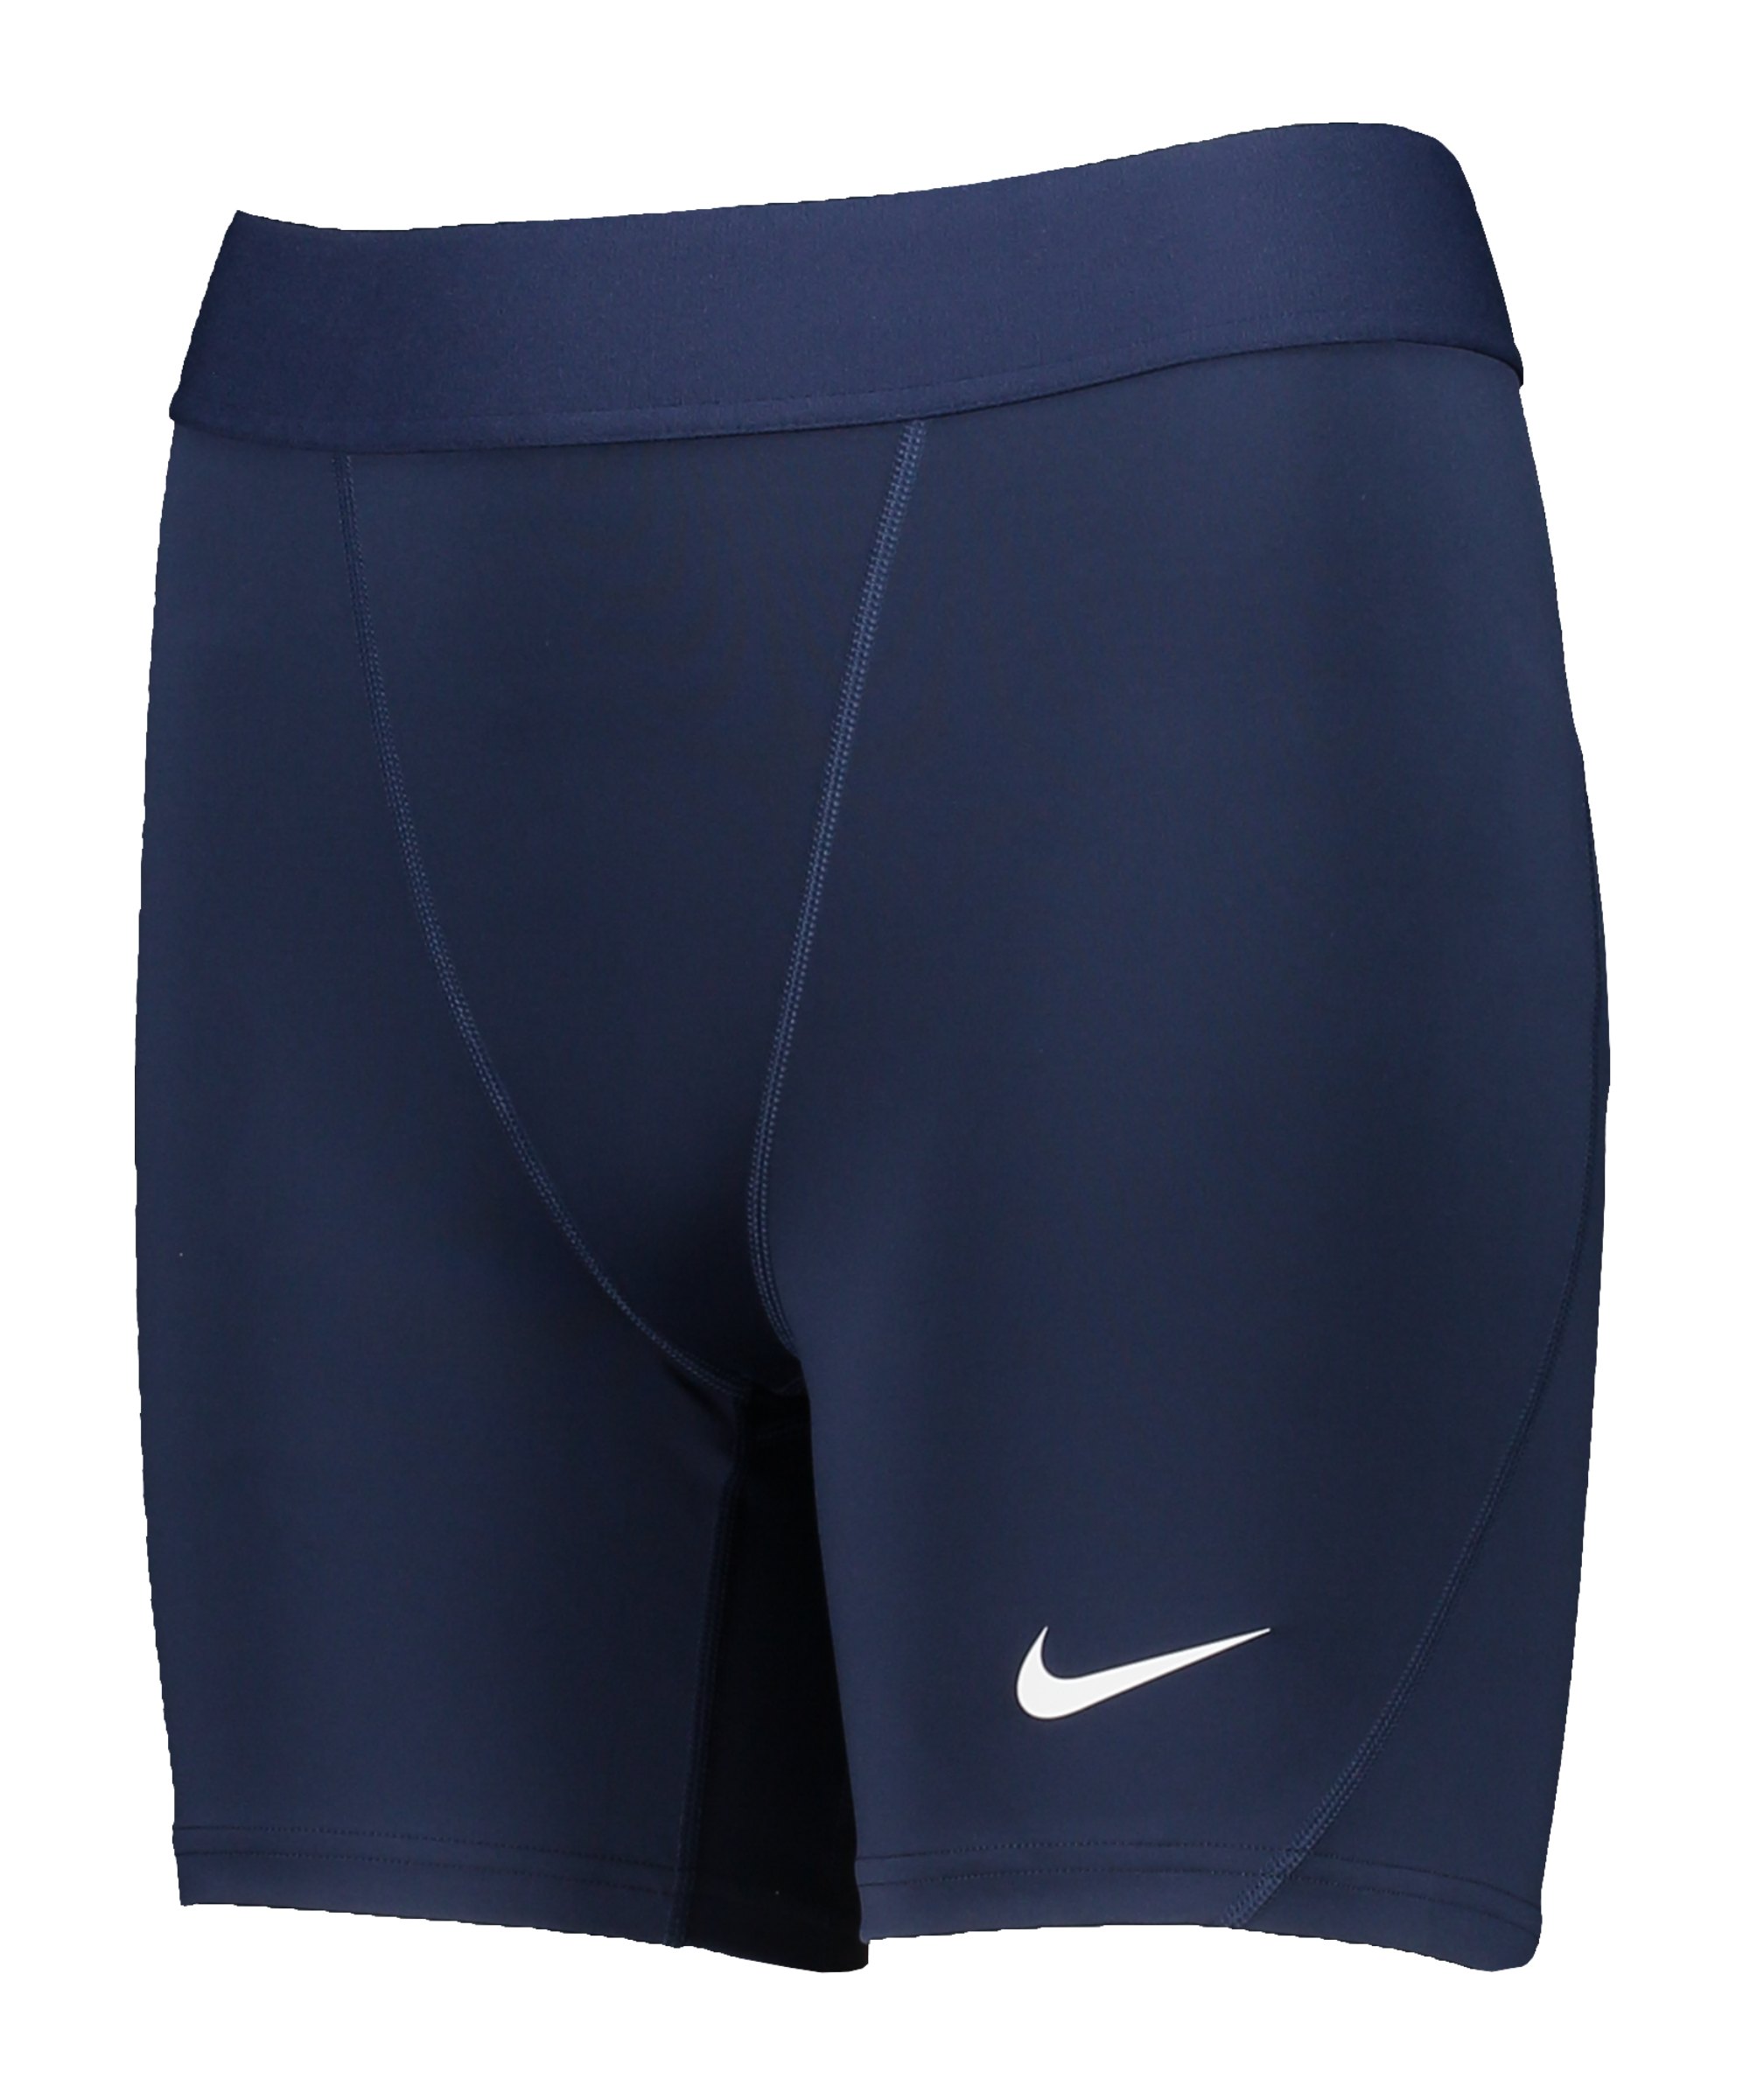 Nike Pro Strike Short Damen Blau Weiss F410 - blau